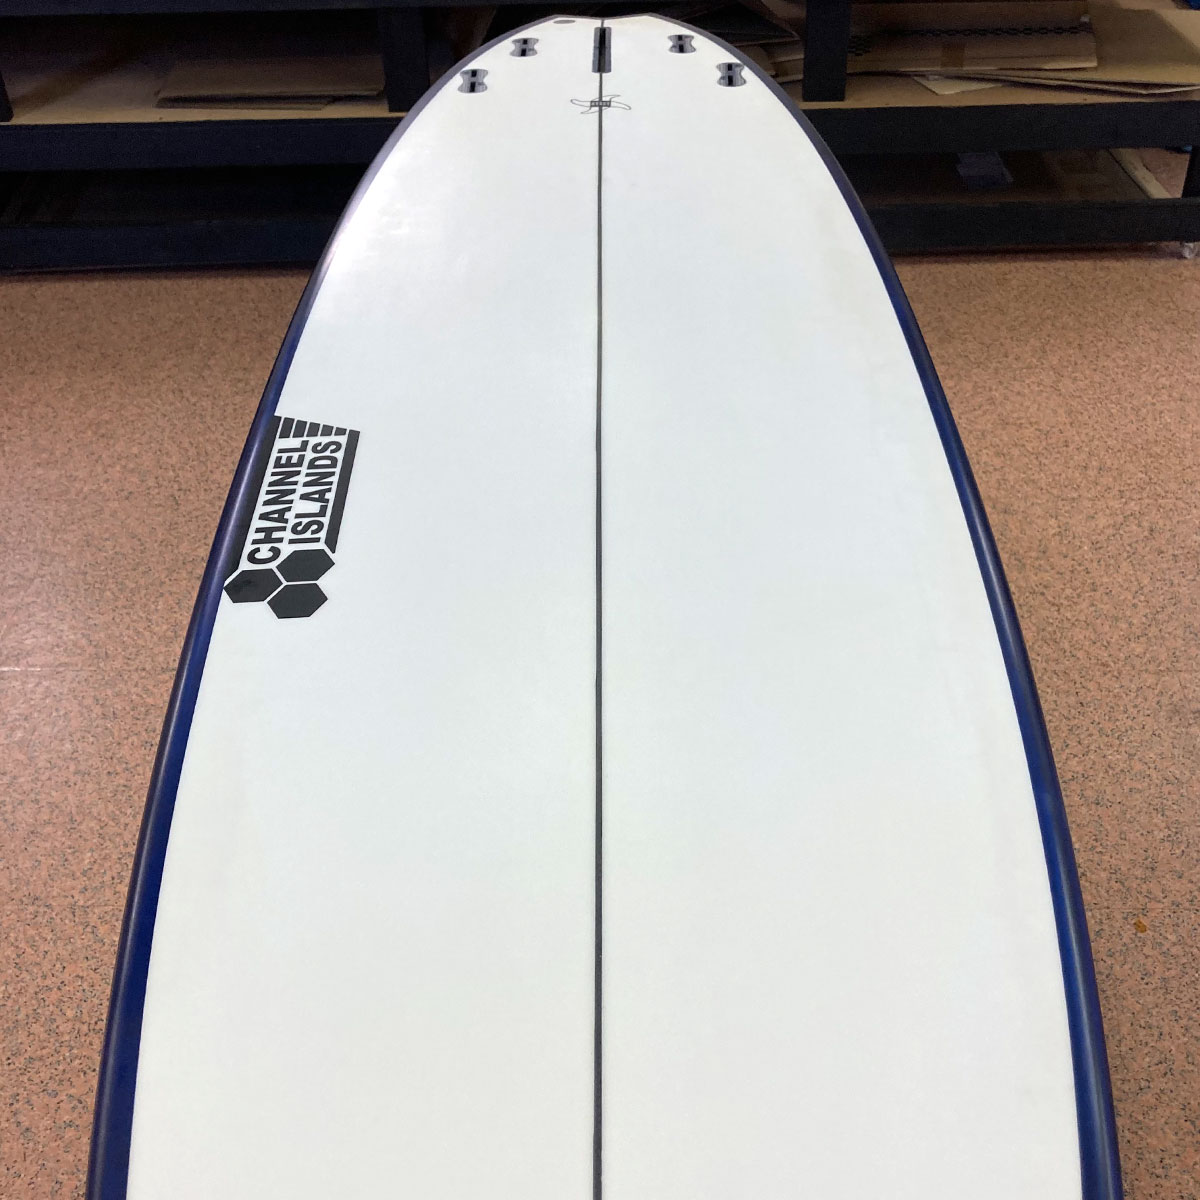 中古ボード サーフボード サーフィン USED SURFBOARD 【used281】THUNDERBOLT TECHNOLOGIES  Surfboards SPEEDQUONG サンダーボルトテクノロジー サーフボード スピードクオン 7'6 x 21' 3/4 x 2' 5/8  